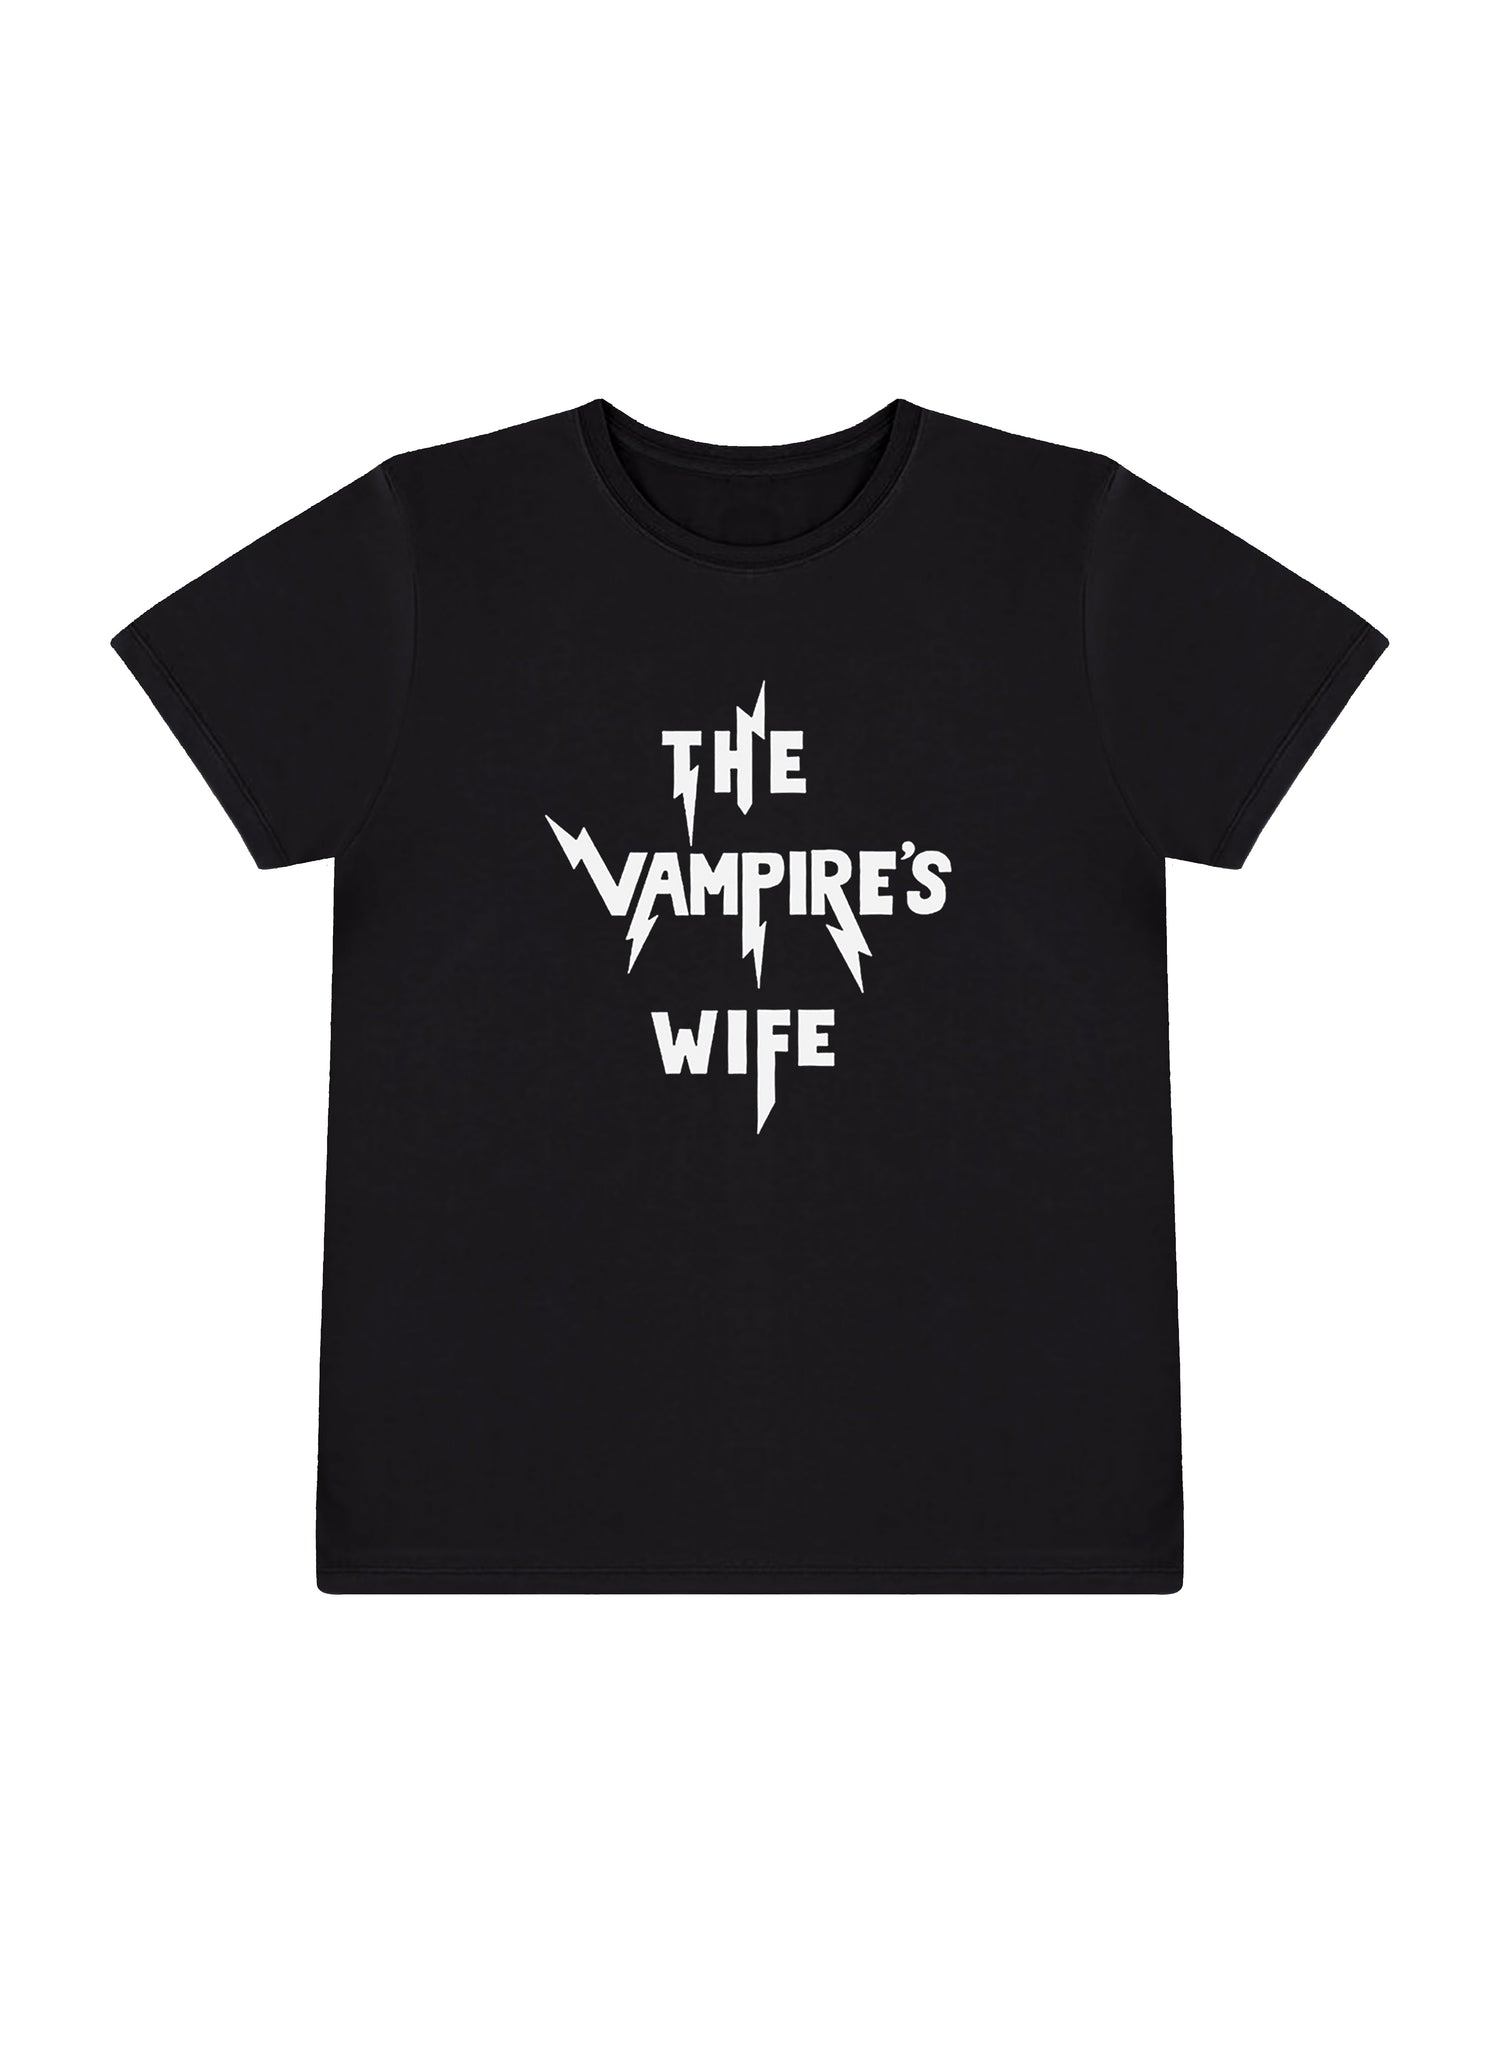 THE VAMPIRE'S WIFE T SHIRT